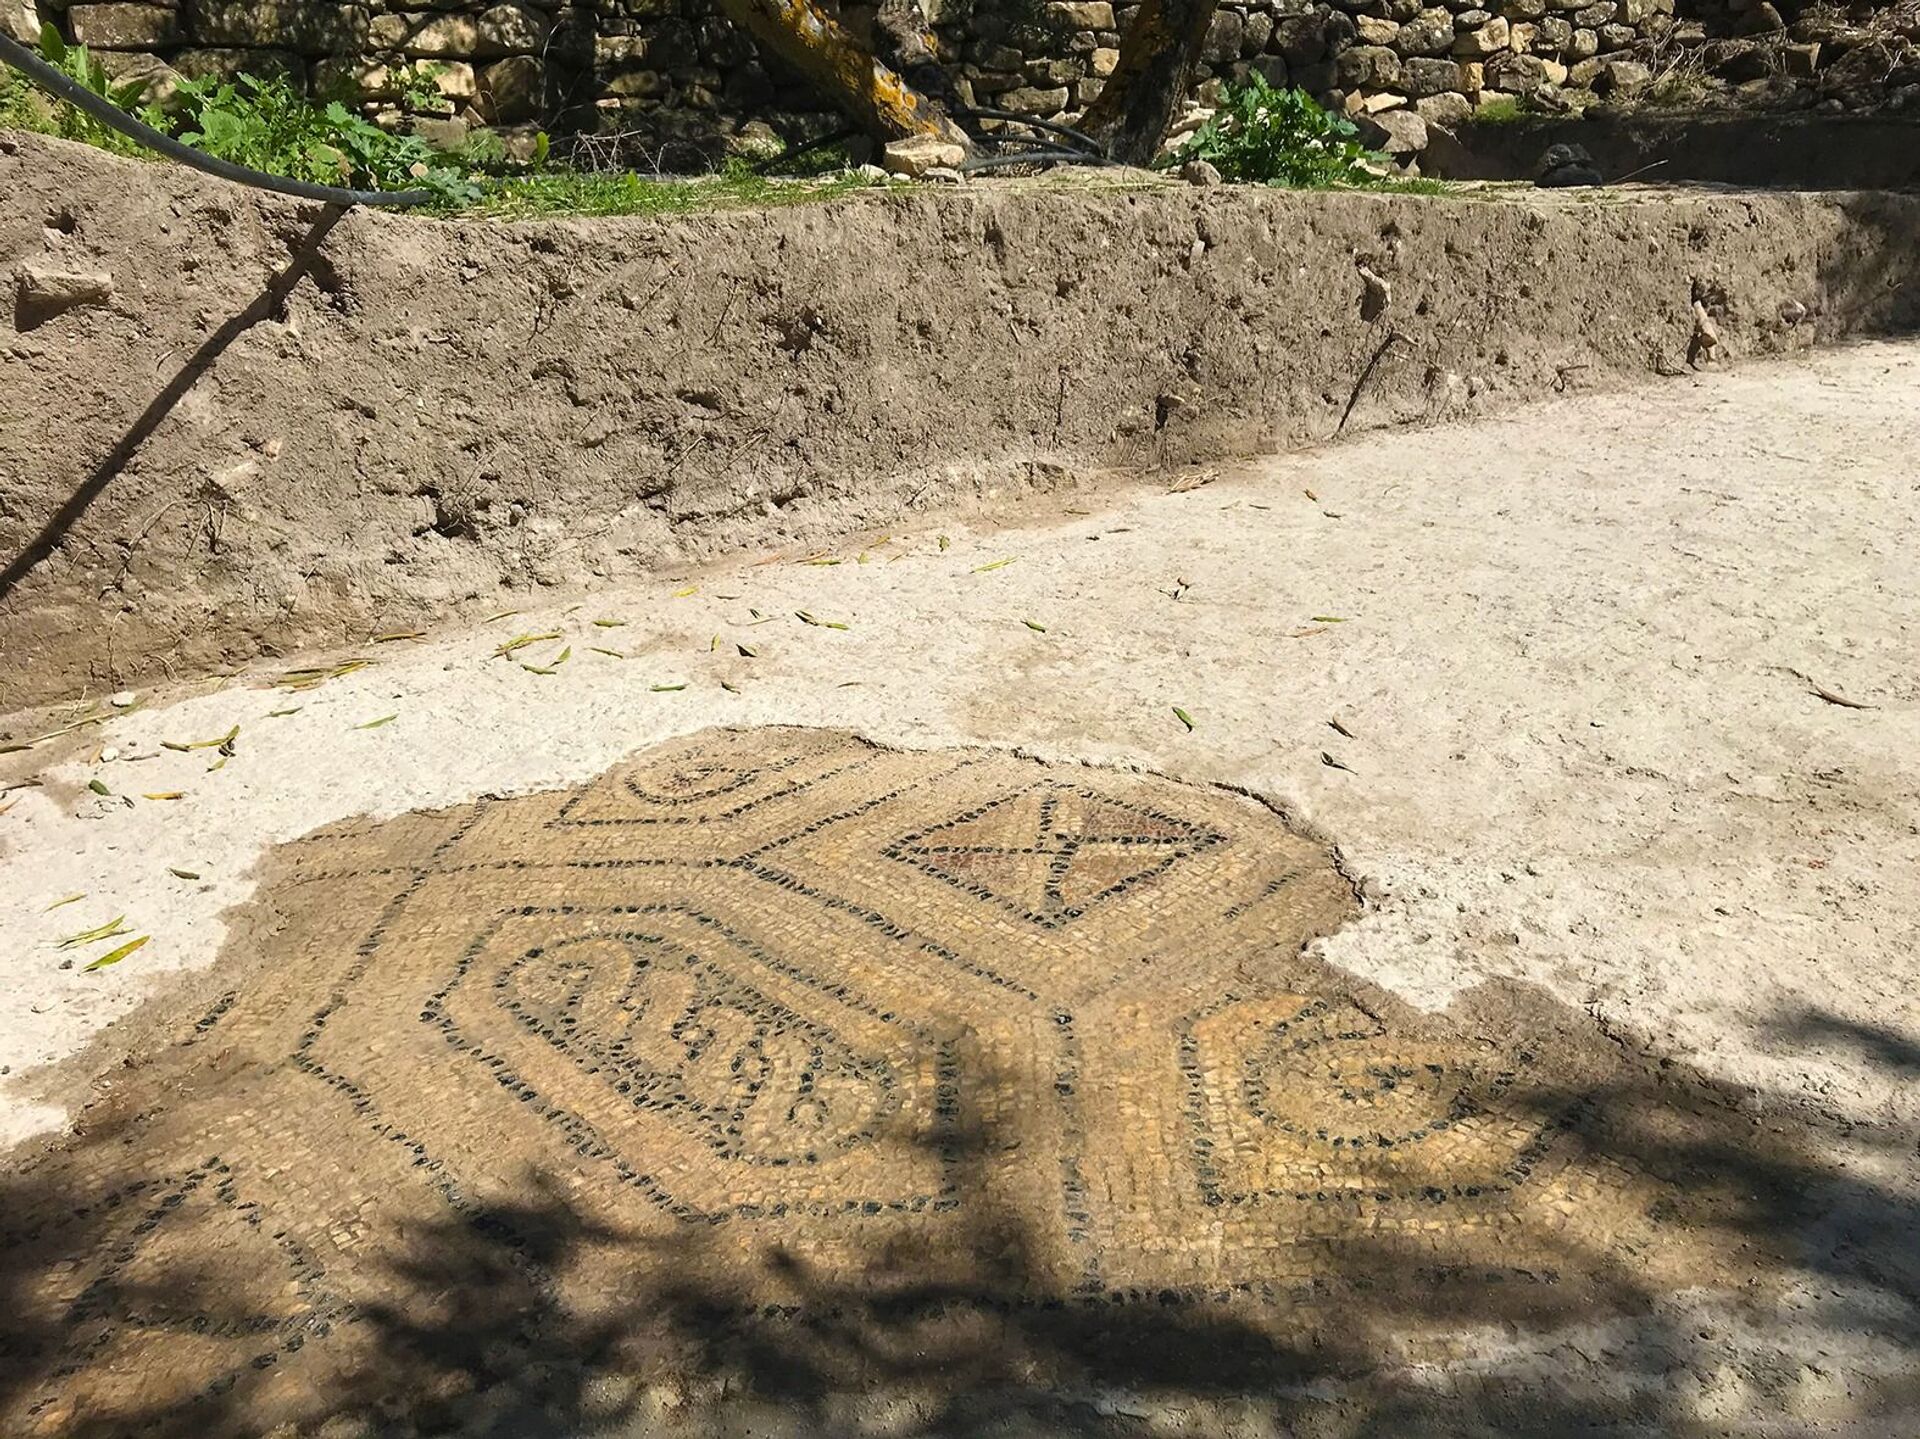 Mosaicos, sepultamentos e oficinas: fazenda romana do século IV é descoberta na Espanha (FOTOS) - Sputnik Brasil, 1920, 25.03.2021